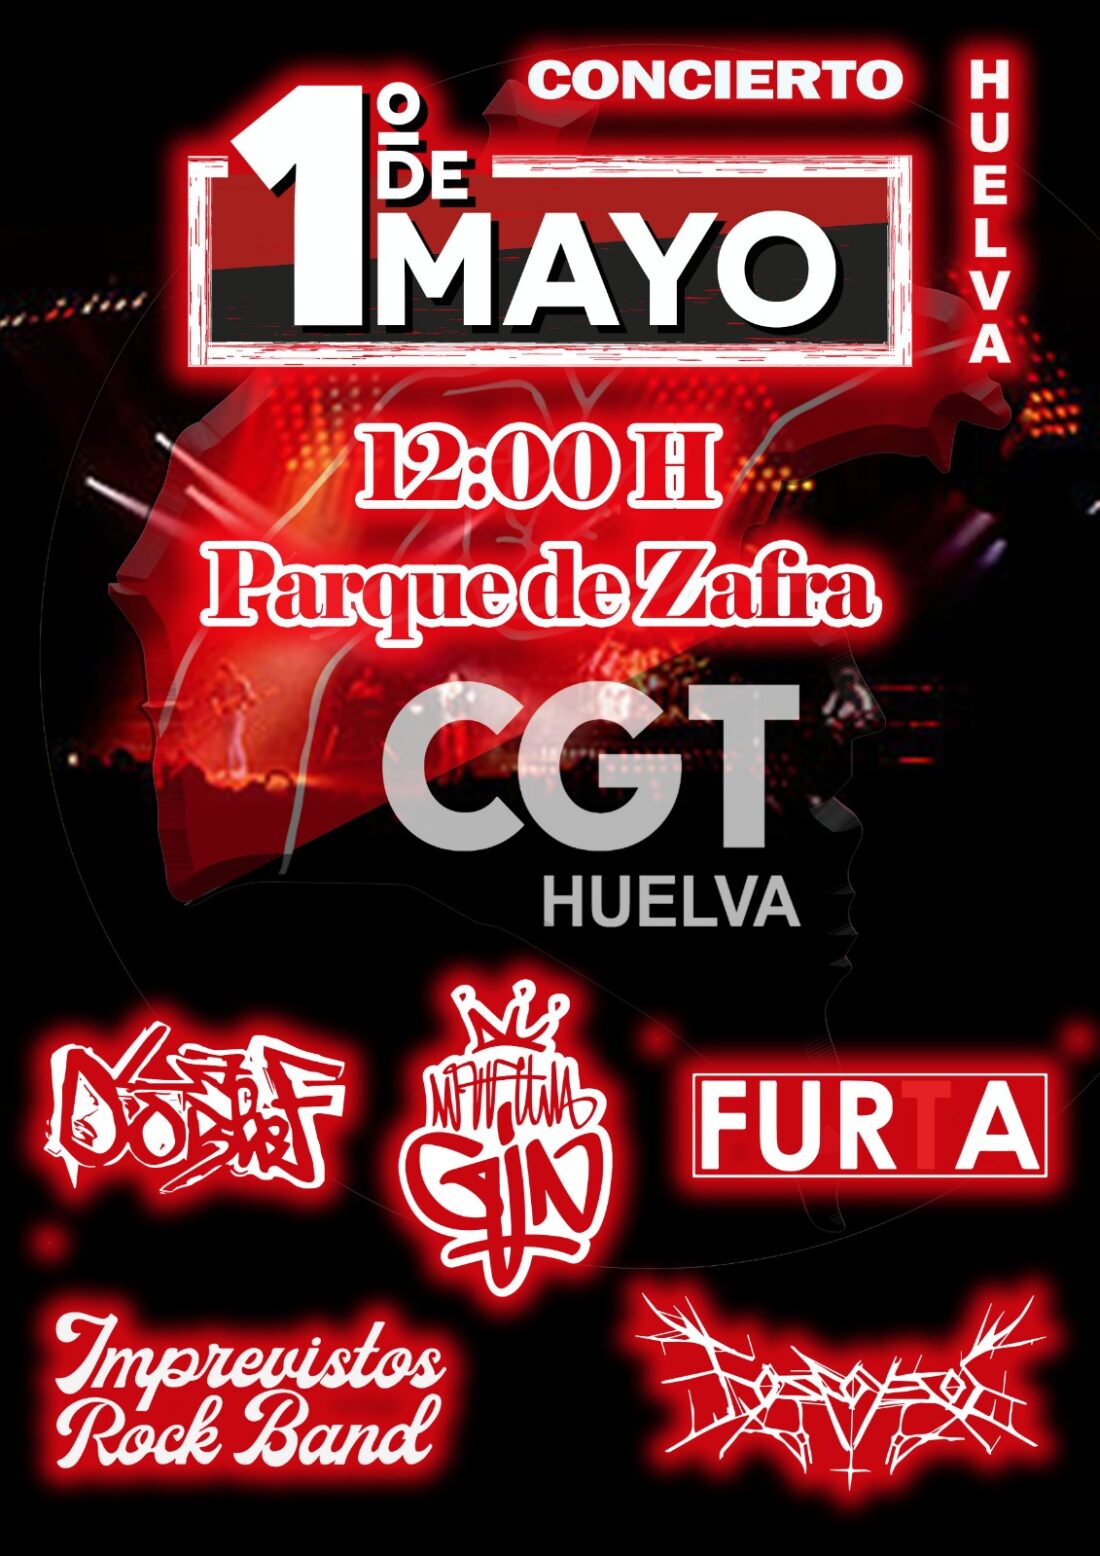 CGT Huelva organiza un concierto para celebrar el 1º de Mayo